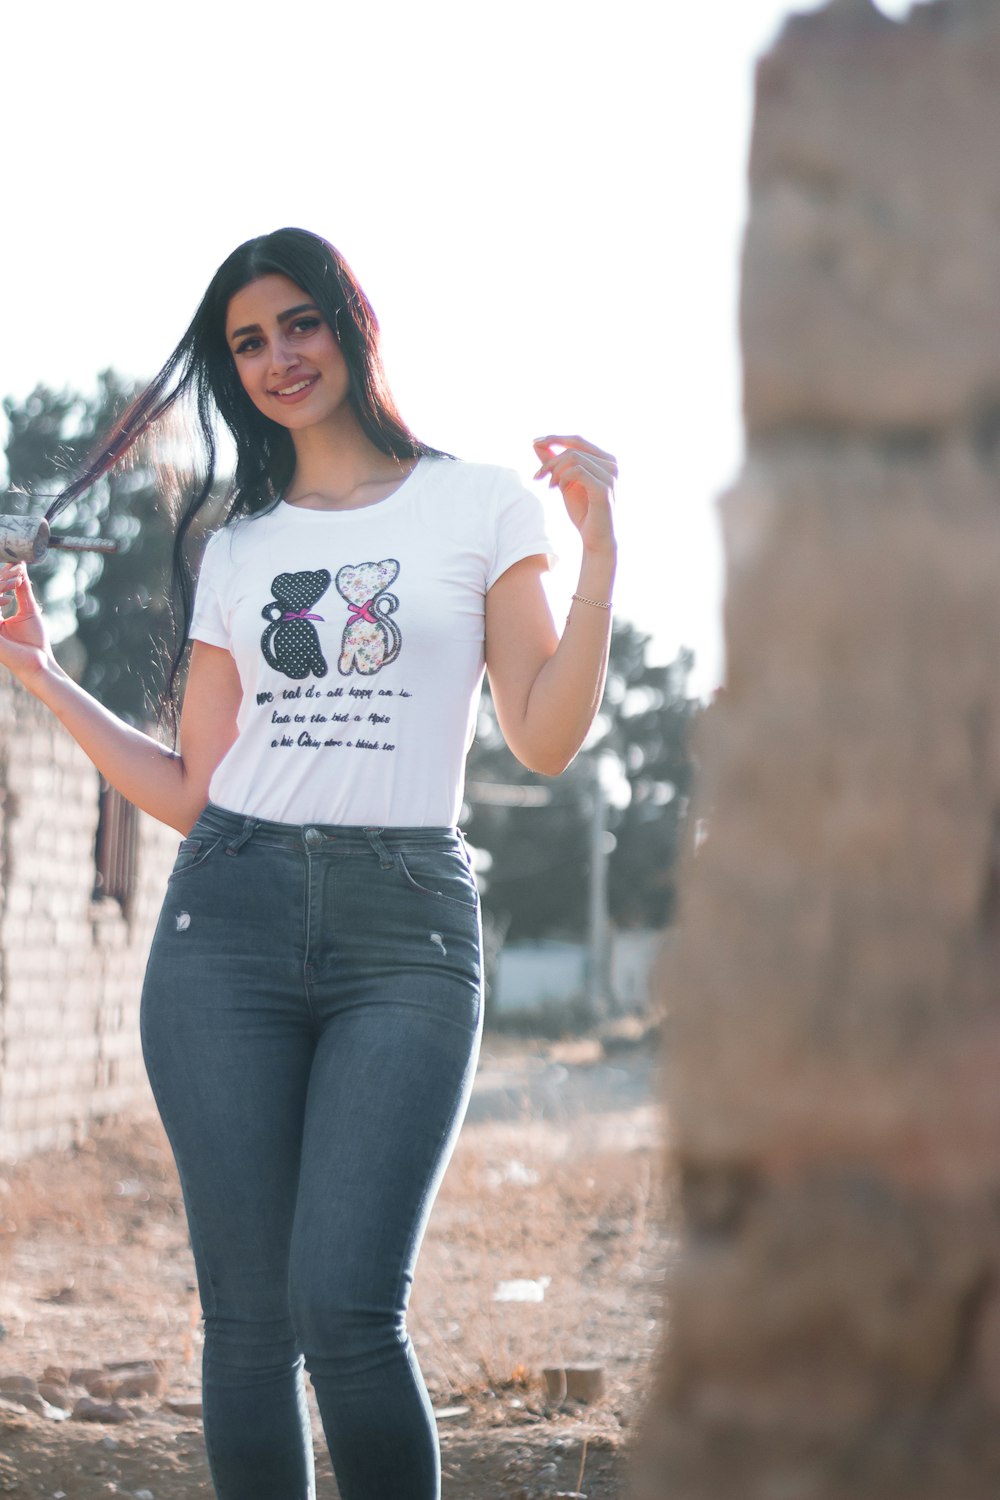 500+ Fotos de Chica en Jeans | Descargar imágenes gratis en Unsplash